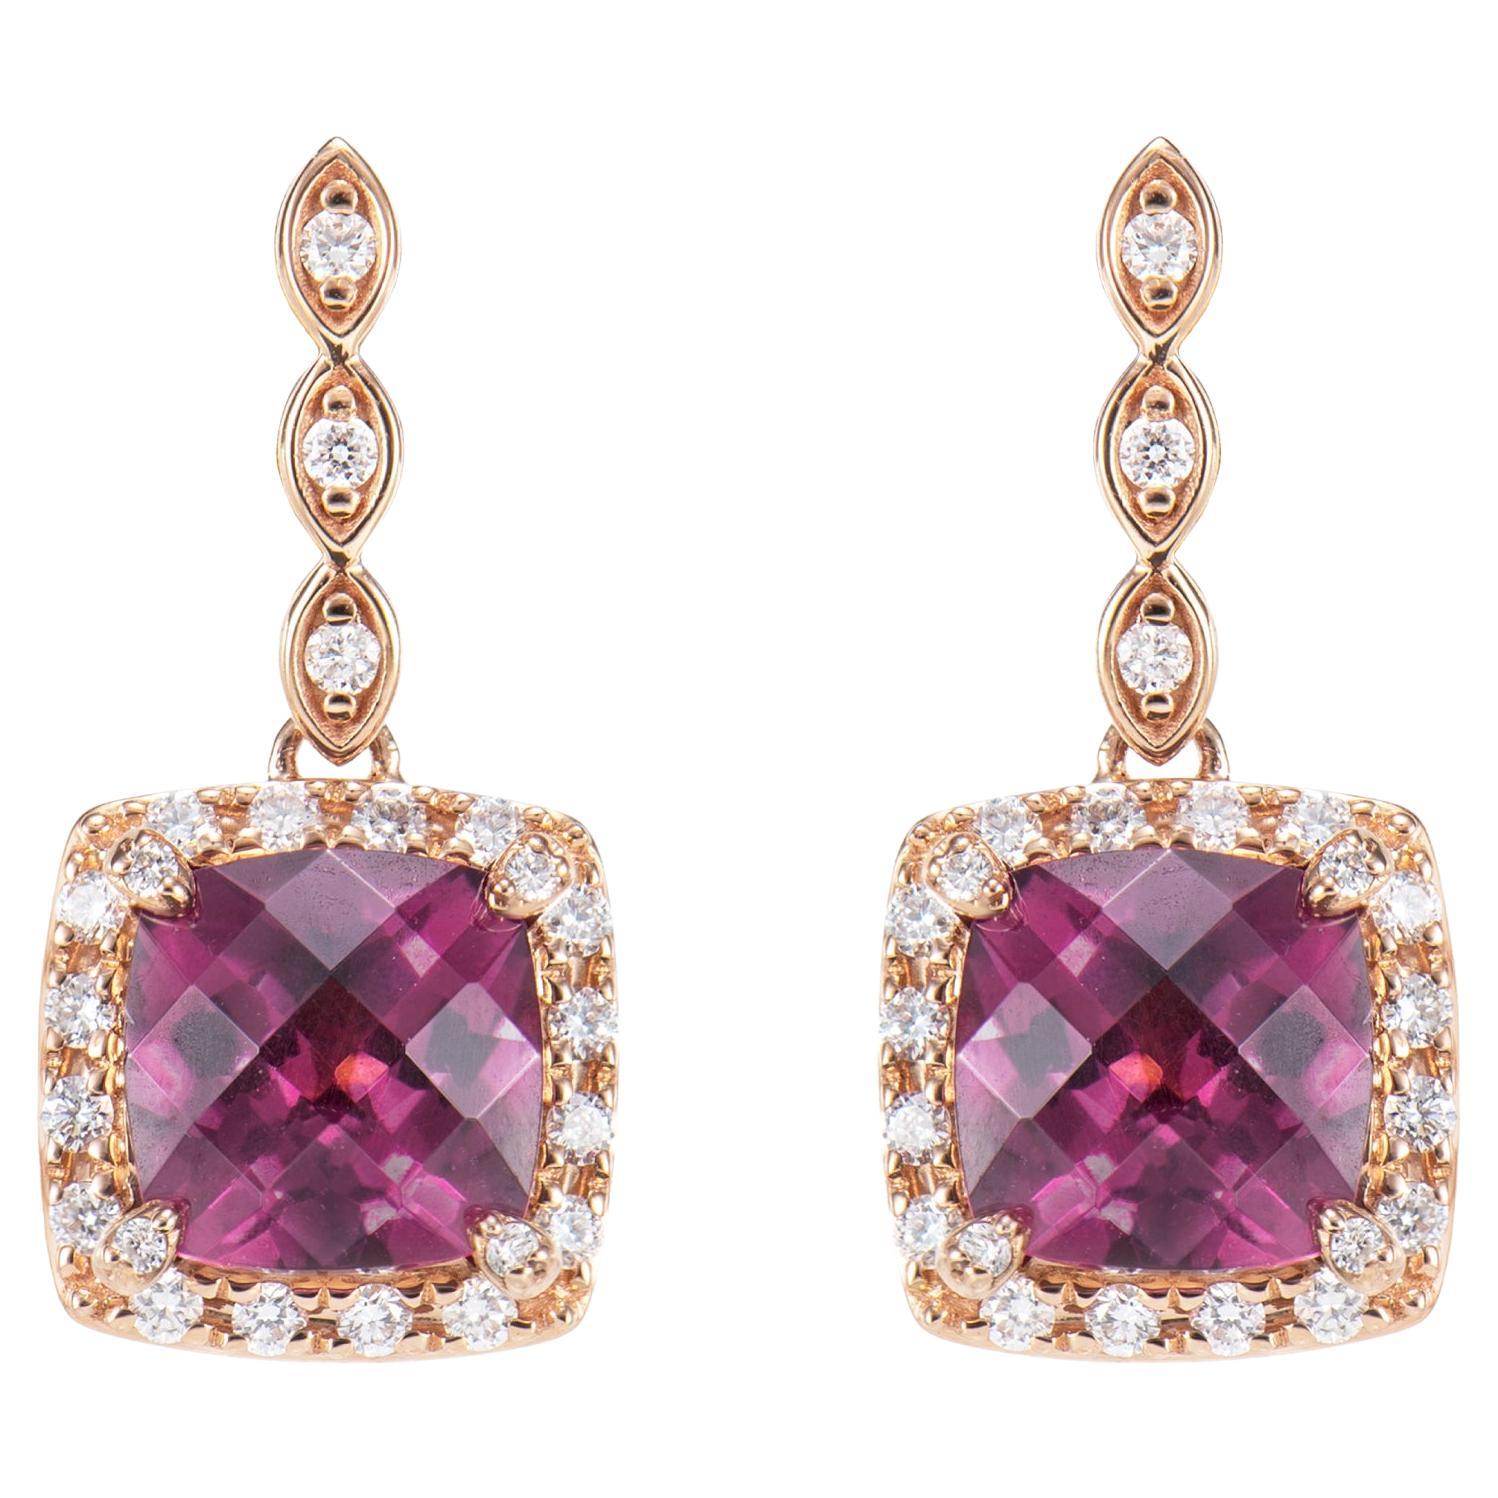 Boucles d'oreilles pendantes en or rose 18 carats et rhodolite de 3,80 carats avec diamants blancs.